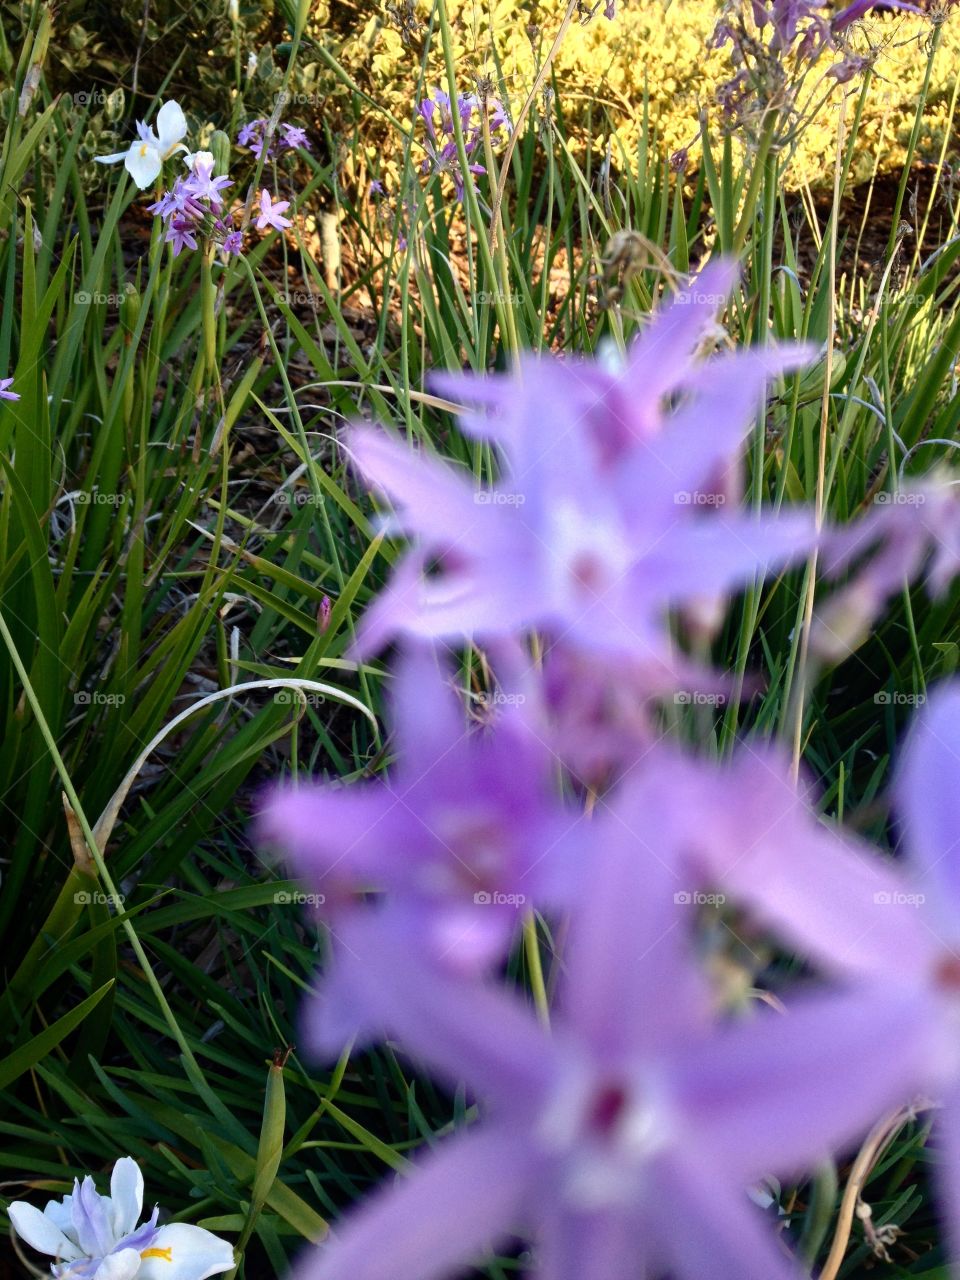 Depth of field little purple flowers